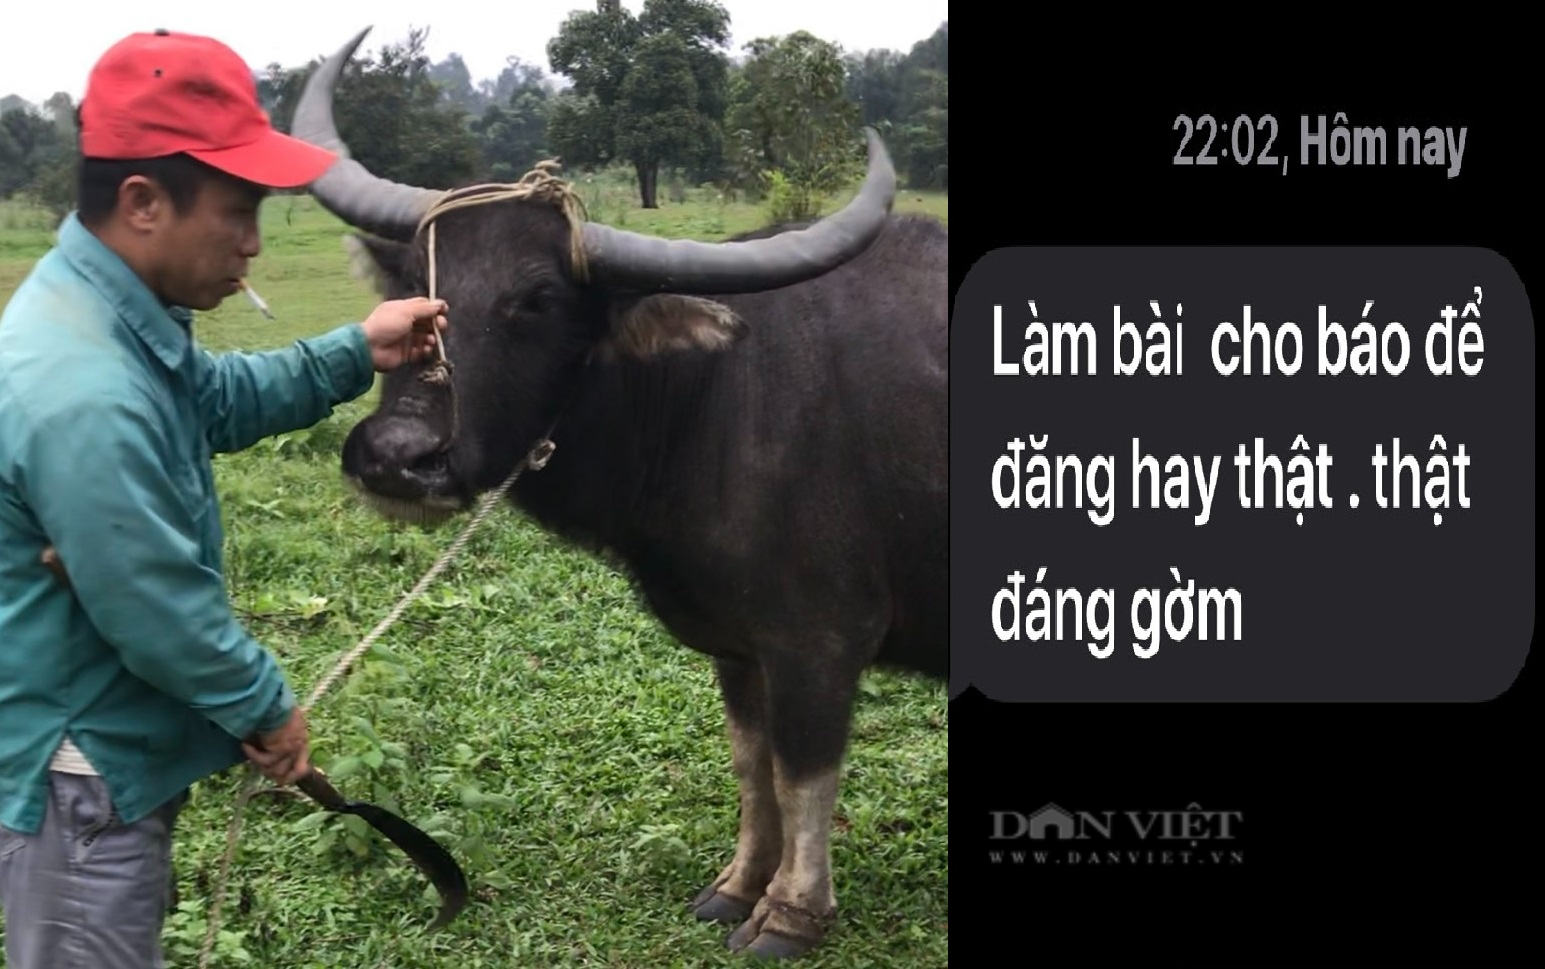 Chủ tịch UBND tỉnh Hà Tĩnh Võ Trọng Hải chỉ đạo xử lý nghiêm vụ trâu nhà dính bẫy thú trong khu bảo tồn - Ảnh 2.